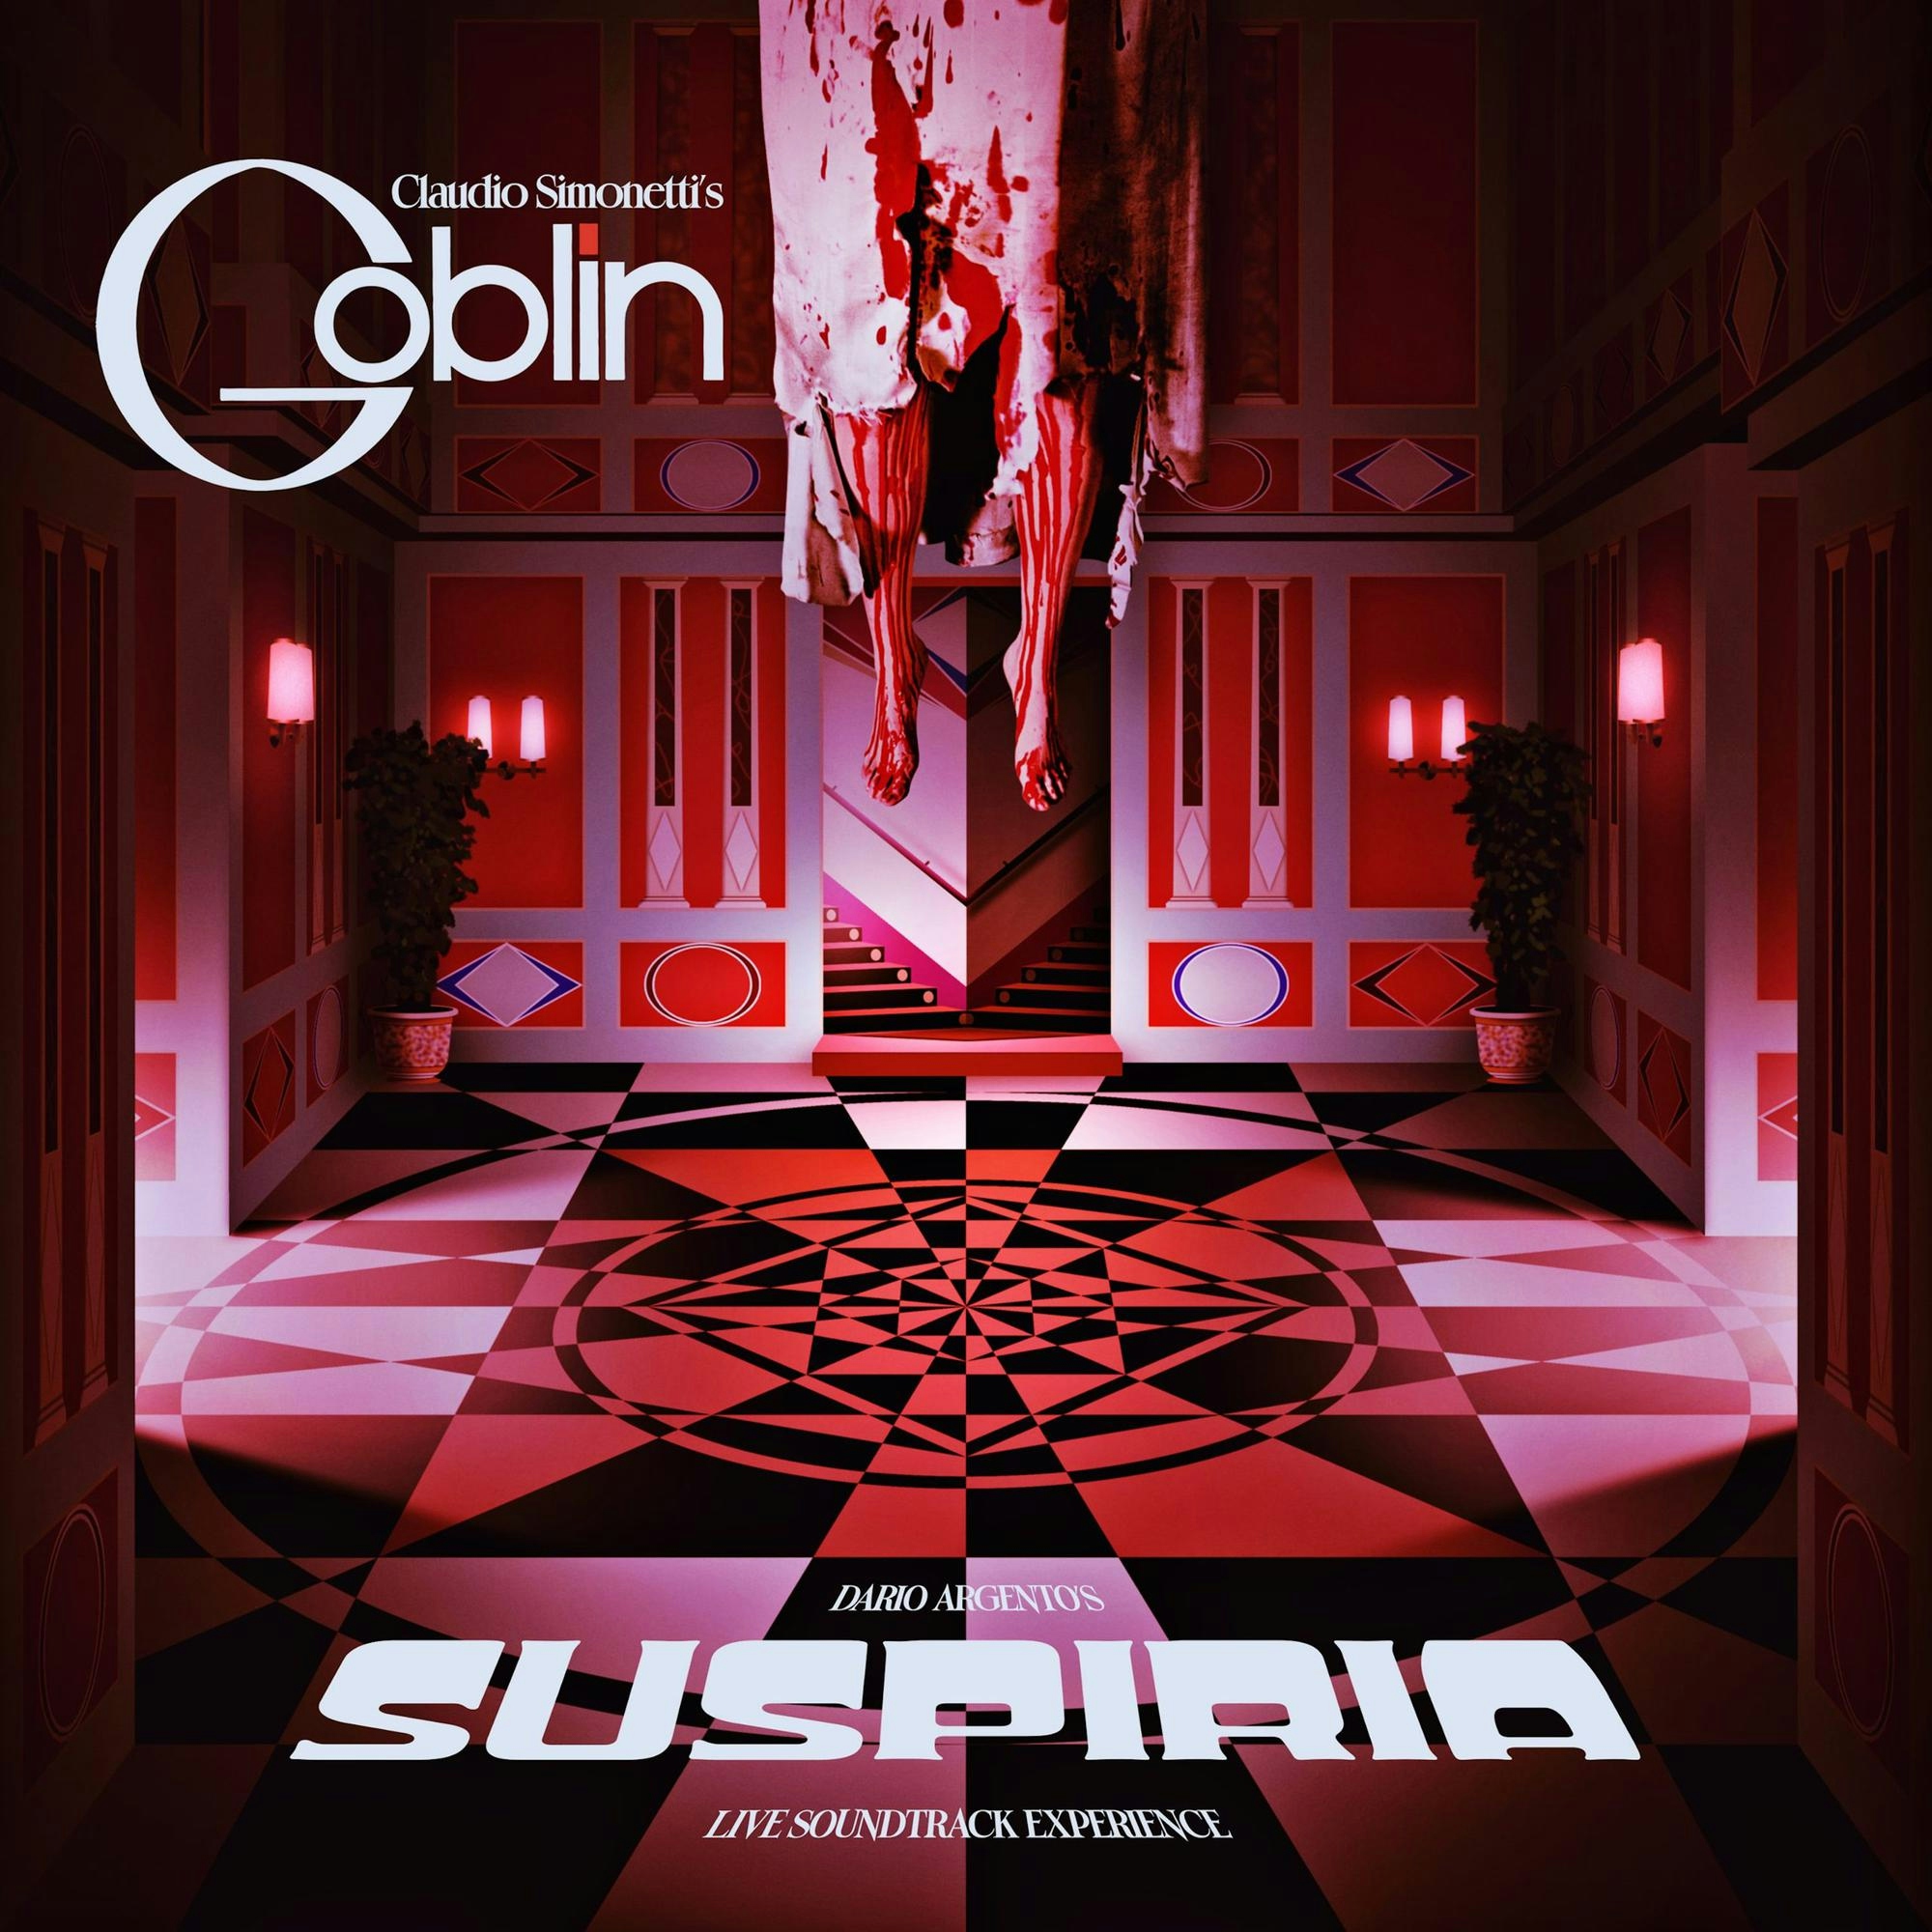 Album artwork for Suspiria - Live Soundtrack Experience by Claudio Simonetti's Goblin